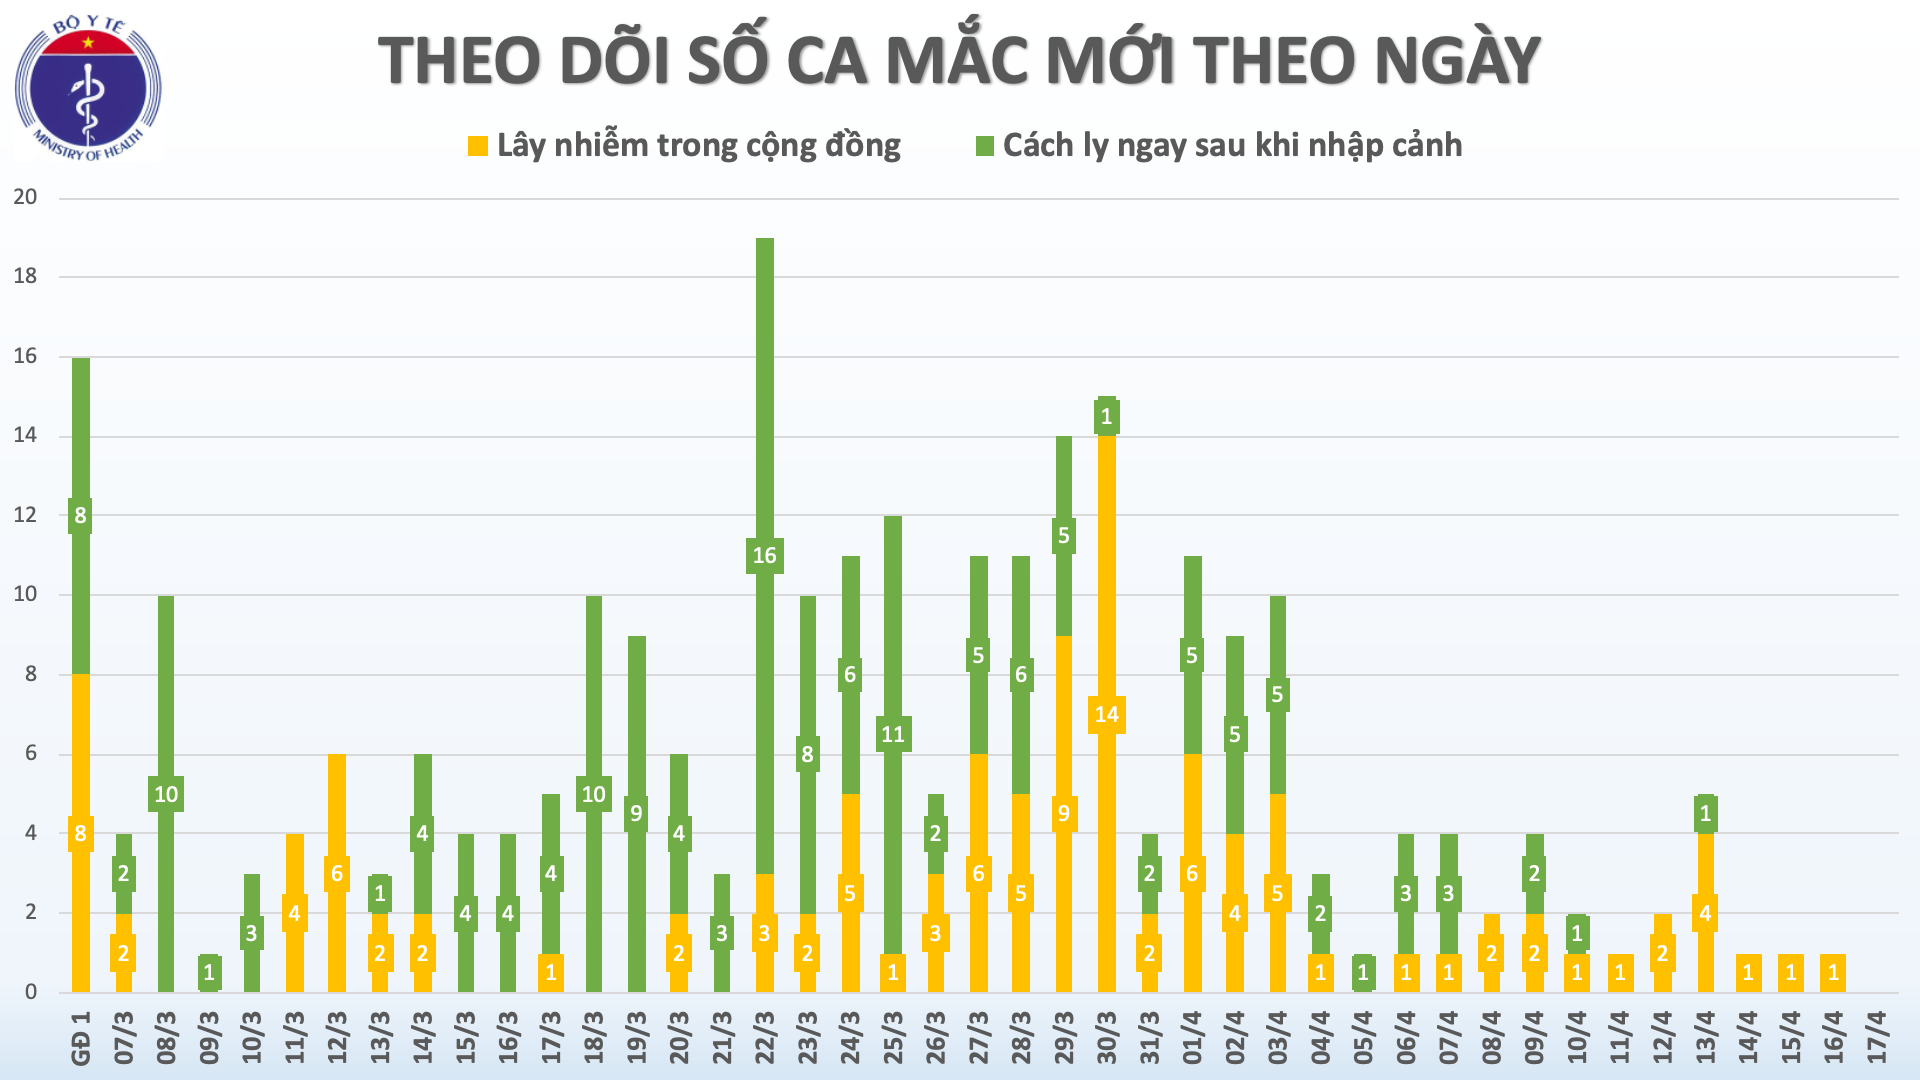 Lần đầu tiên kể từ ngày 7/3, tròn 36 giờ Việt Nam không ghi nhận ca mắc mới COVID-19 2